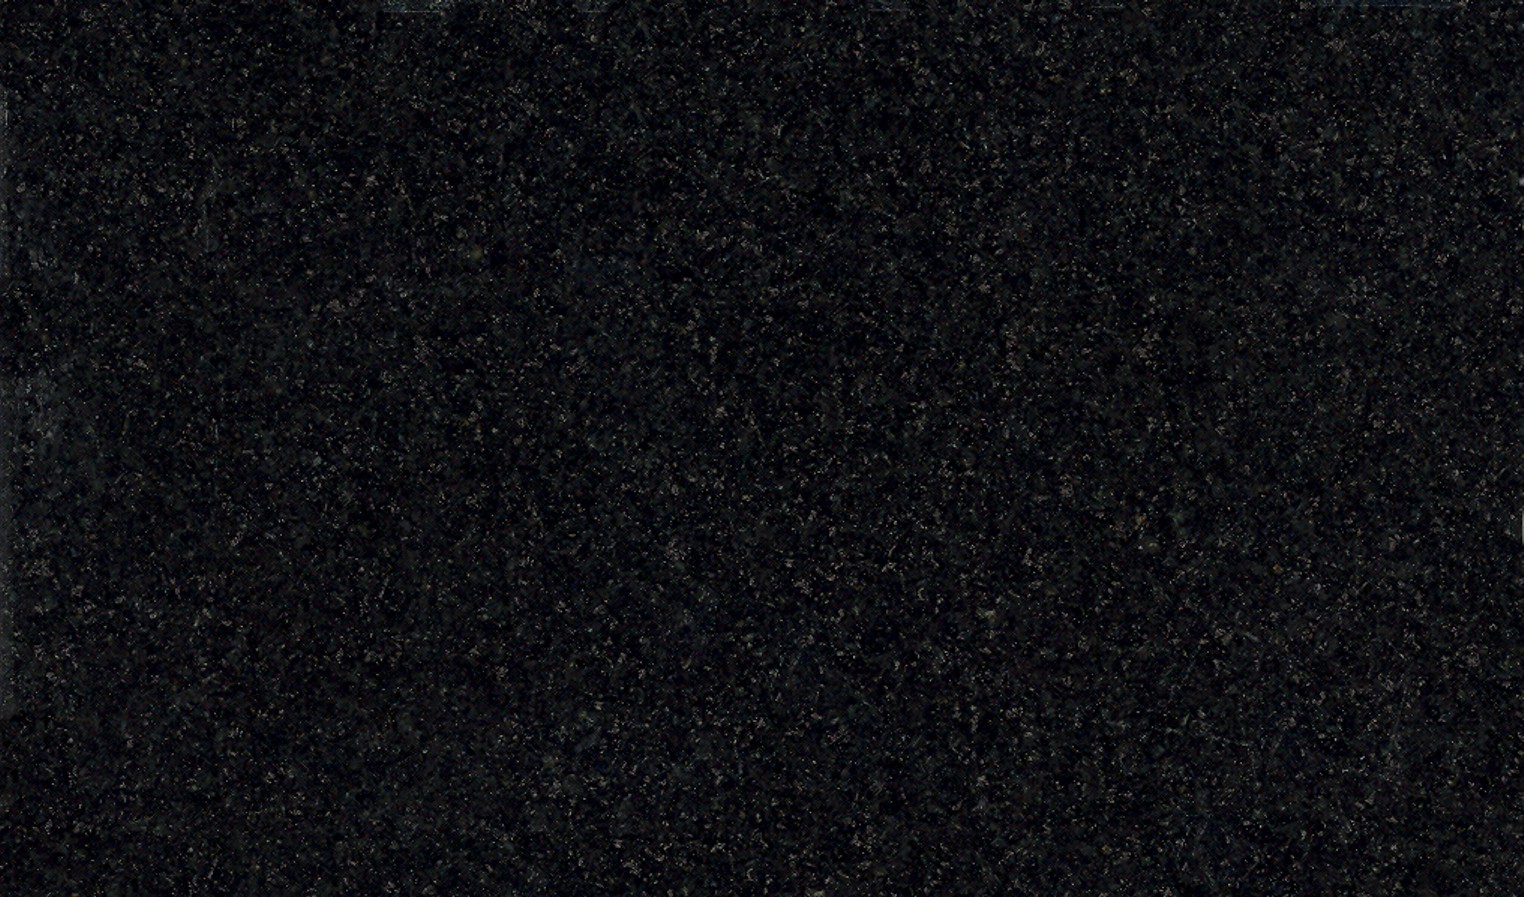 Jet Black Granite